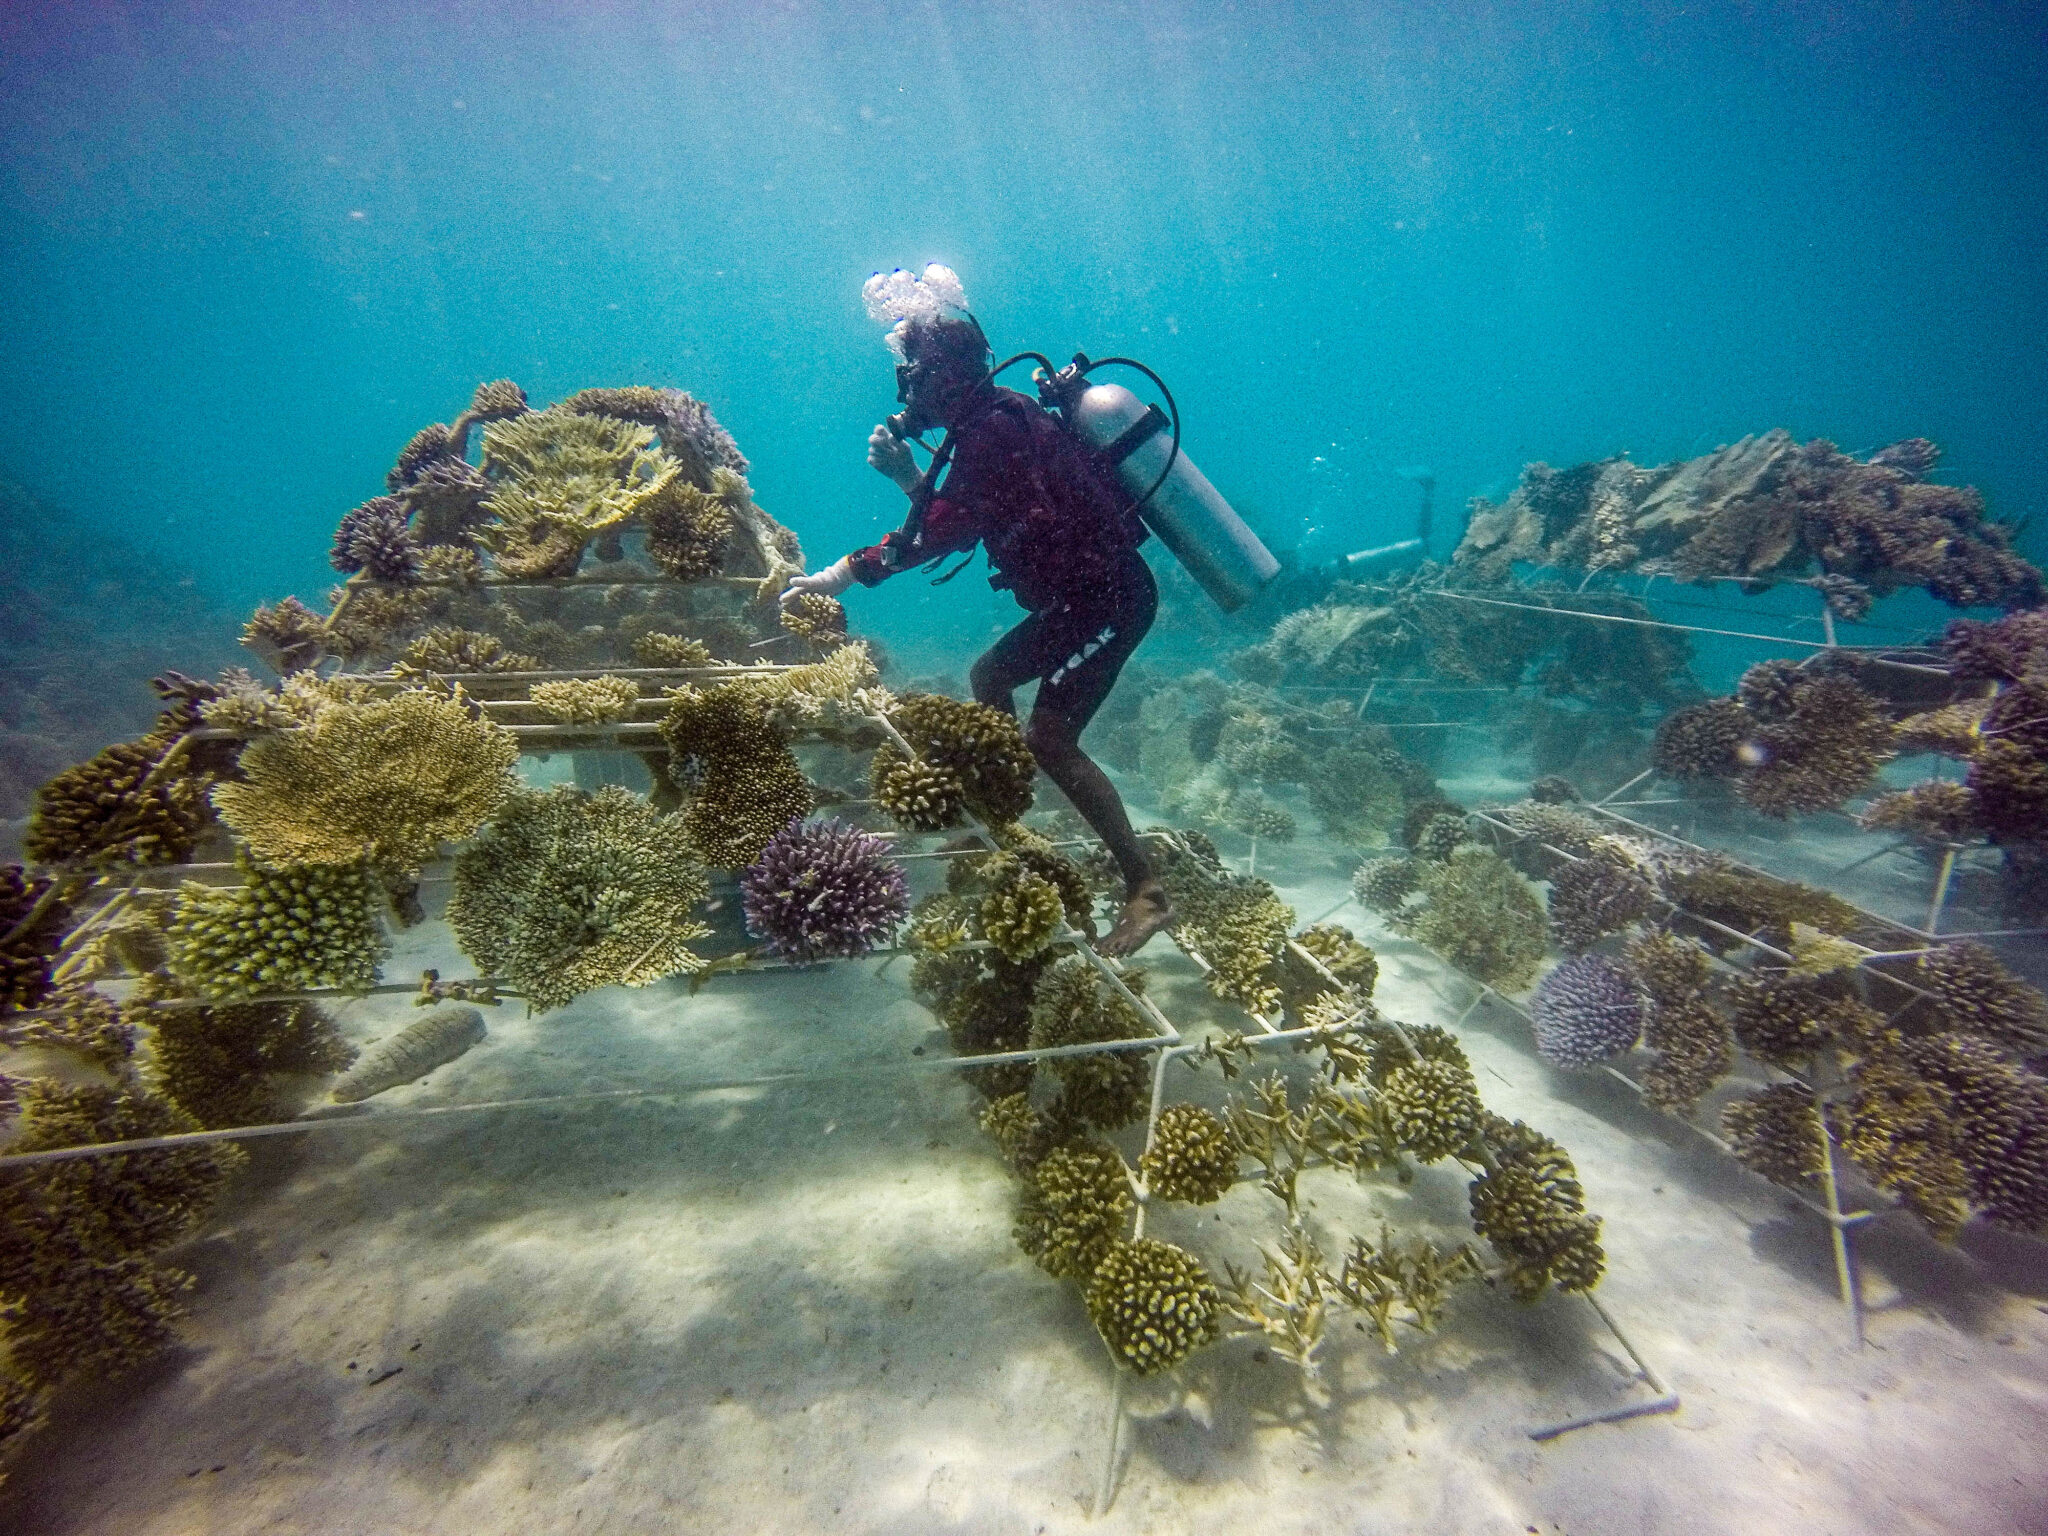 غواص يعمل على زراعة المرجان تحت الماء